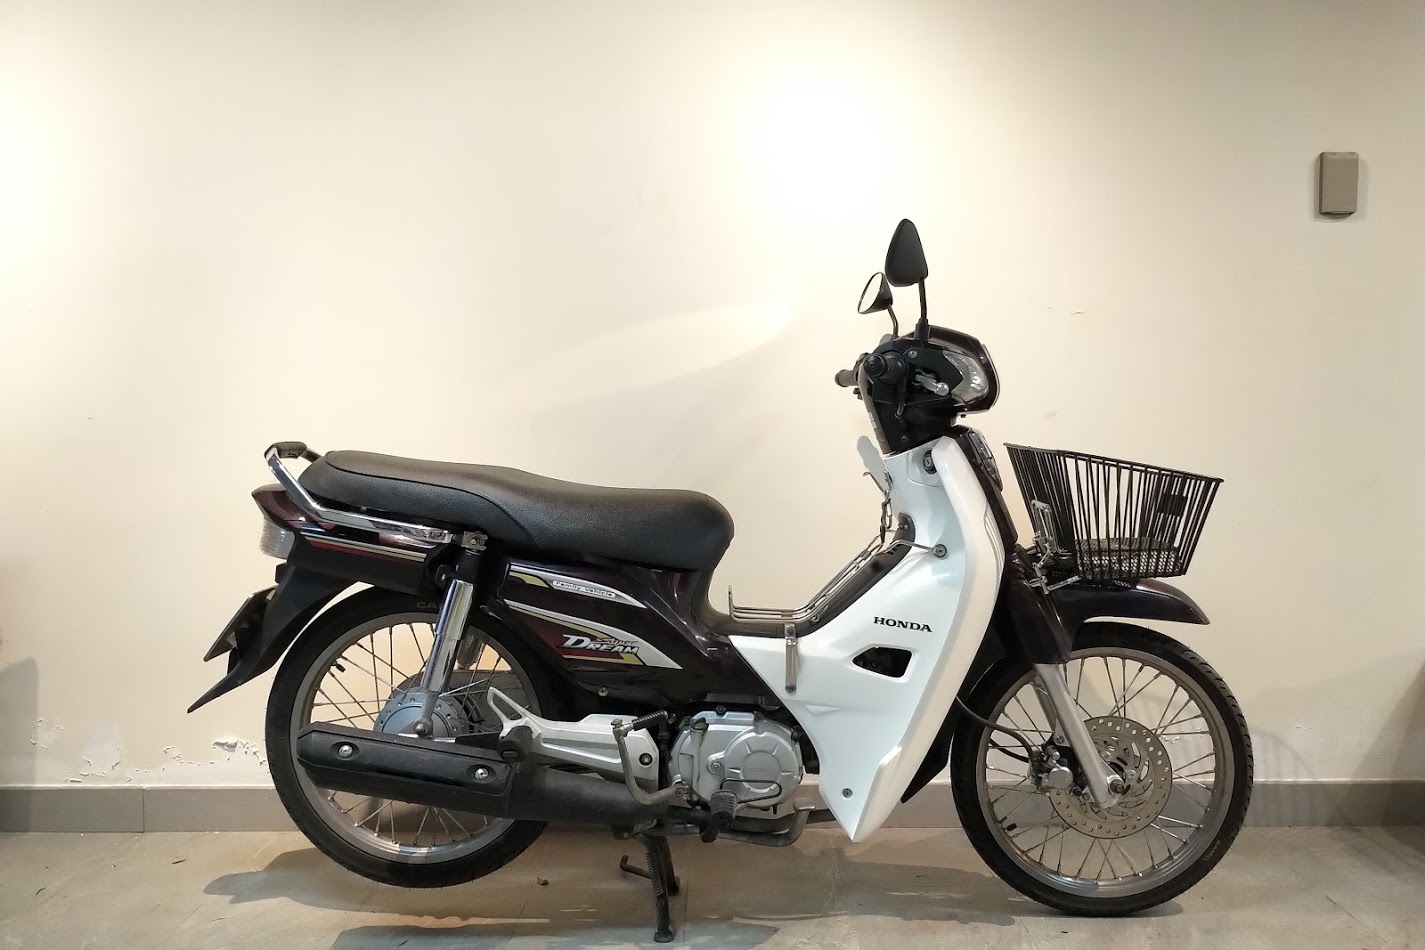 Đánh giá xe Honda Super Dream 110cc 2016 hình ảnh giá bán thị trường   MuasamXecom